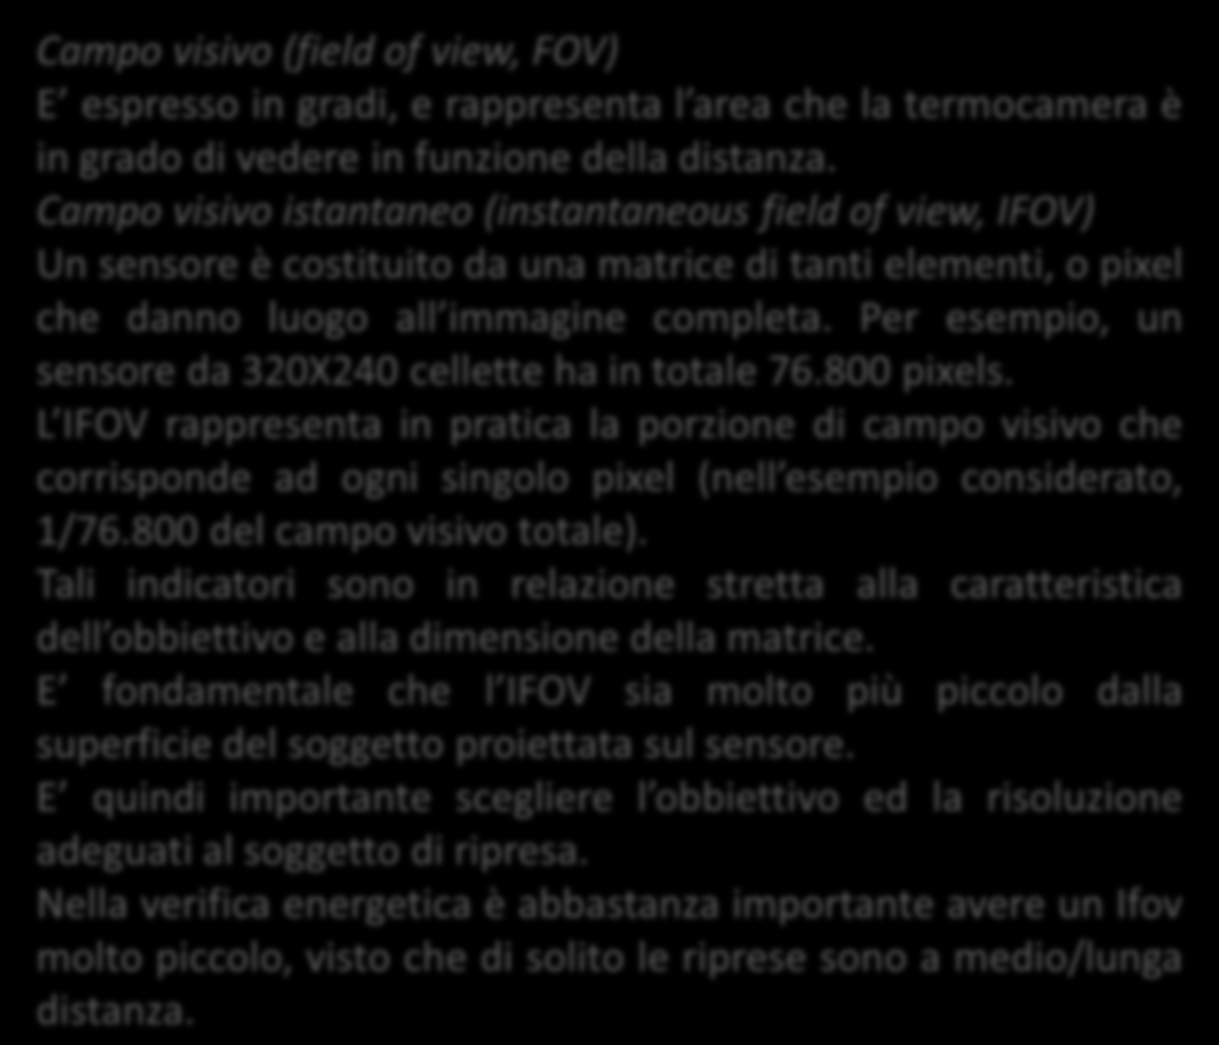 Fov e Ifov Campo visivo (field of view, FOV) E espresso in gradi, e rappresenta l area che la termocamera è in grado di vedere in funzione della distanza.